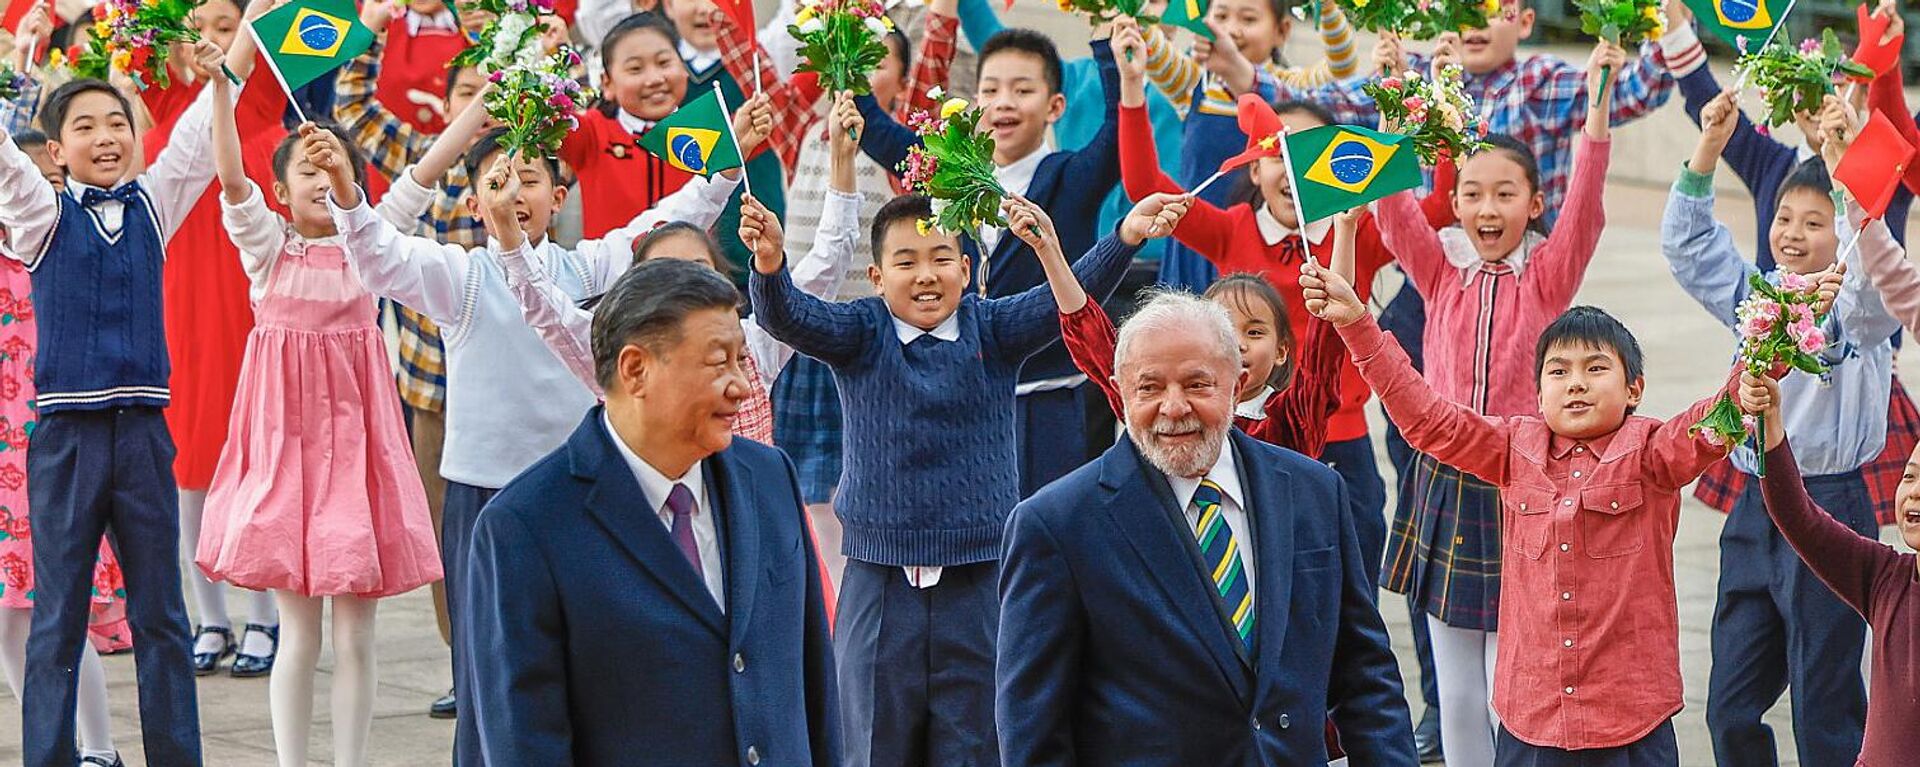 Los presidentes de China, Xi Jinping, y de Brasil, Luiz Inácil Lula da Silva, durante una reunión oficial en el Gran Palacio del Pueblo, Pekín, China, 14 de abril de 2023.  - Sputnik Mundo, 1920, 11.08.2023